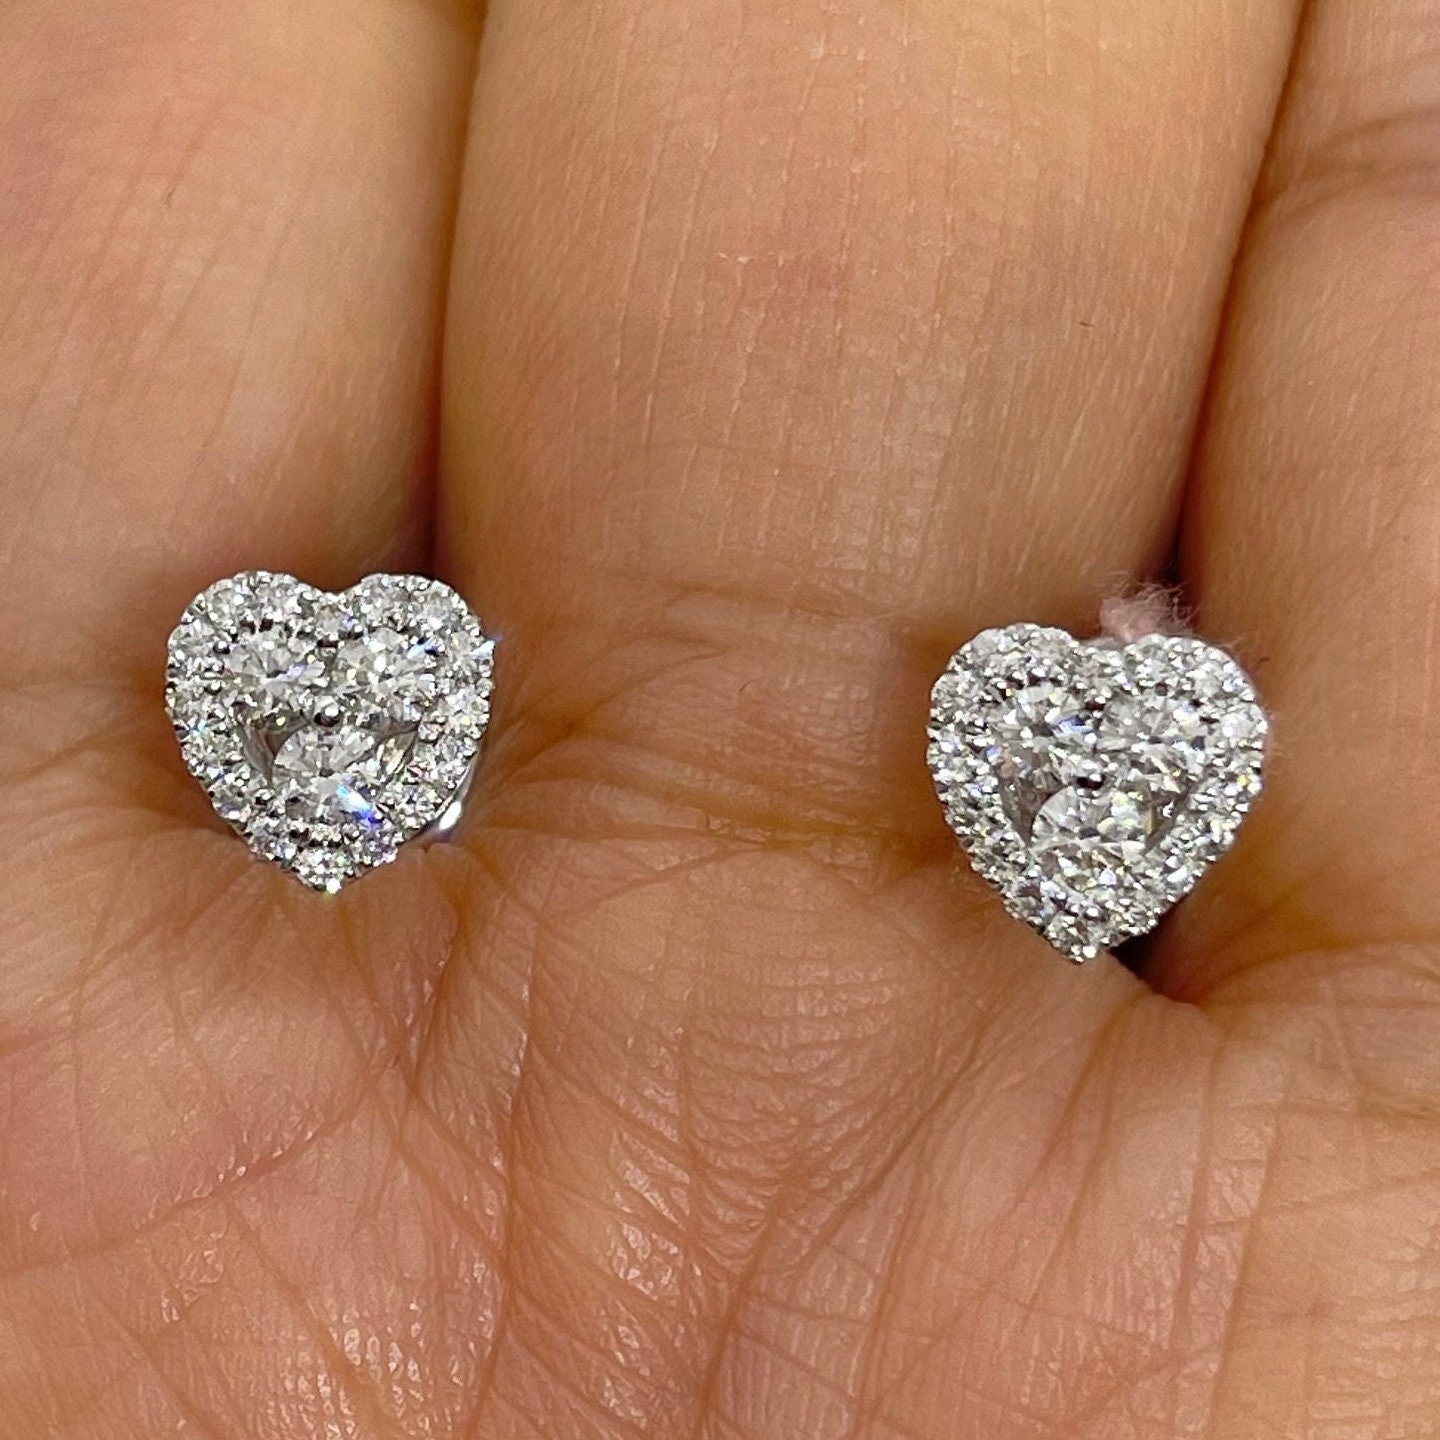 Aura heart-shaped diamond earrings in white gold | De Beers US